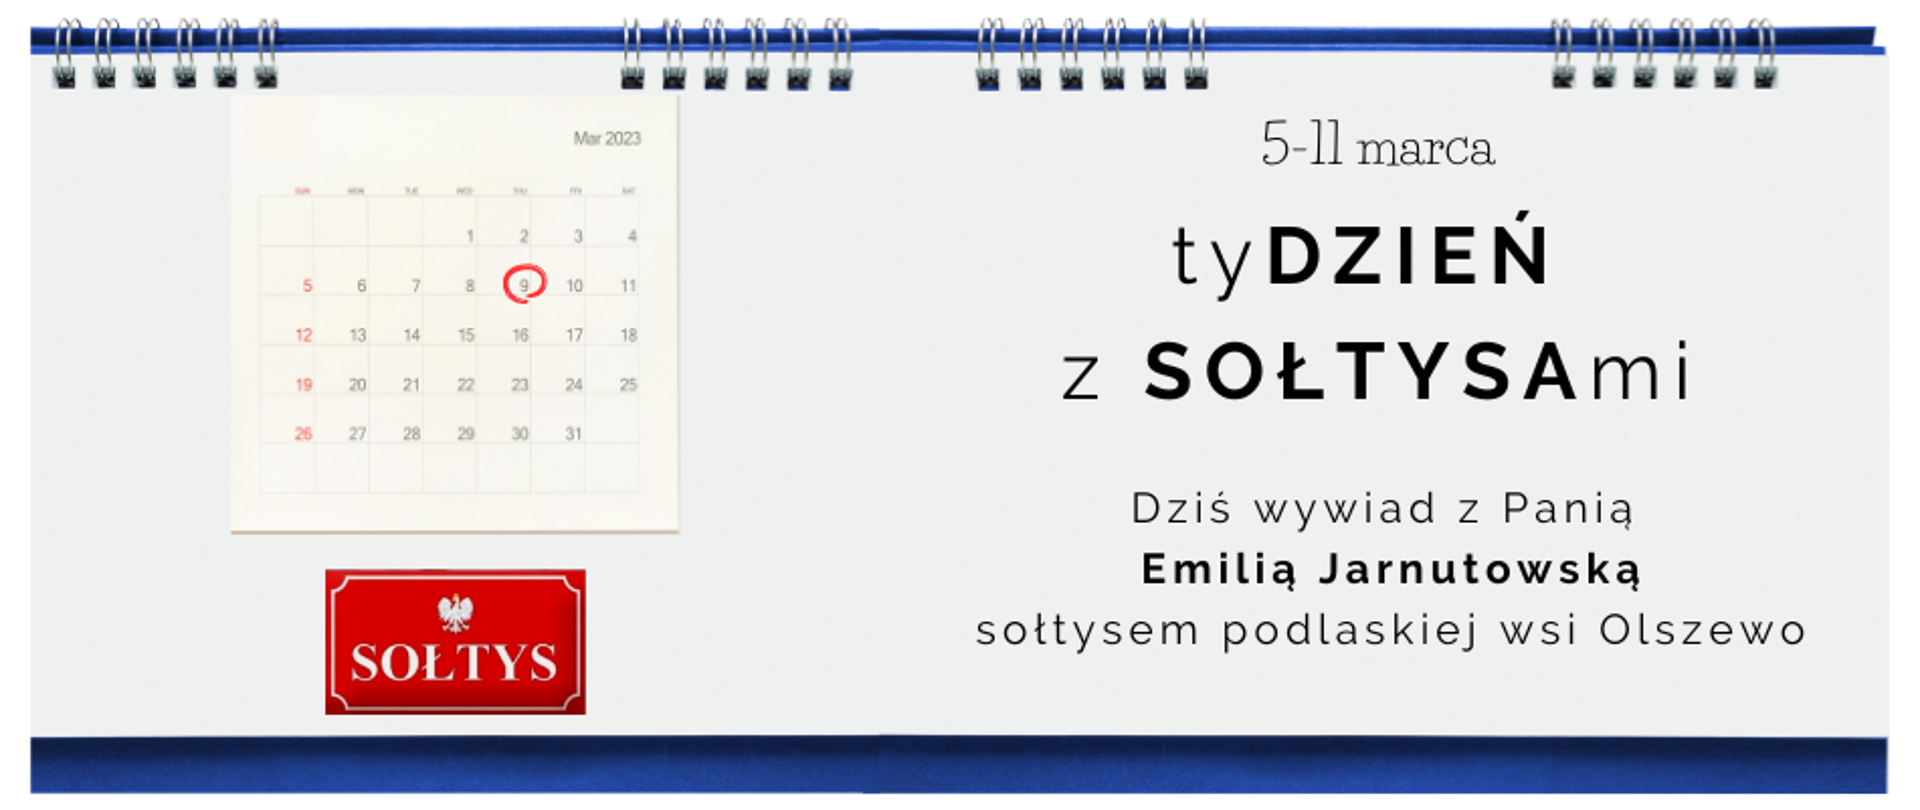 Tydzień z Sołtysami - 9 marca 2023 r. - wywiad z Emilią Jarnutowską, sołtysem podlaskiej wsi Olszewo